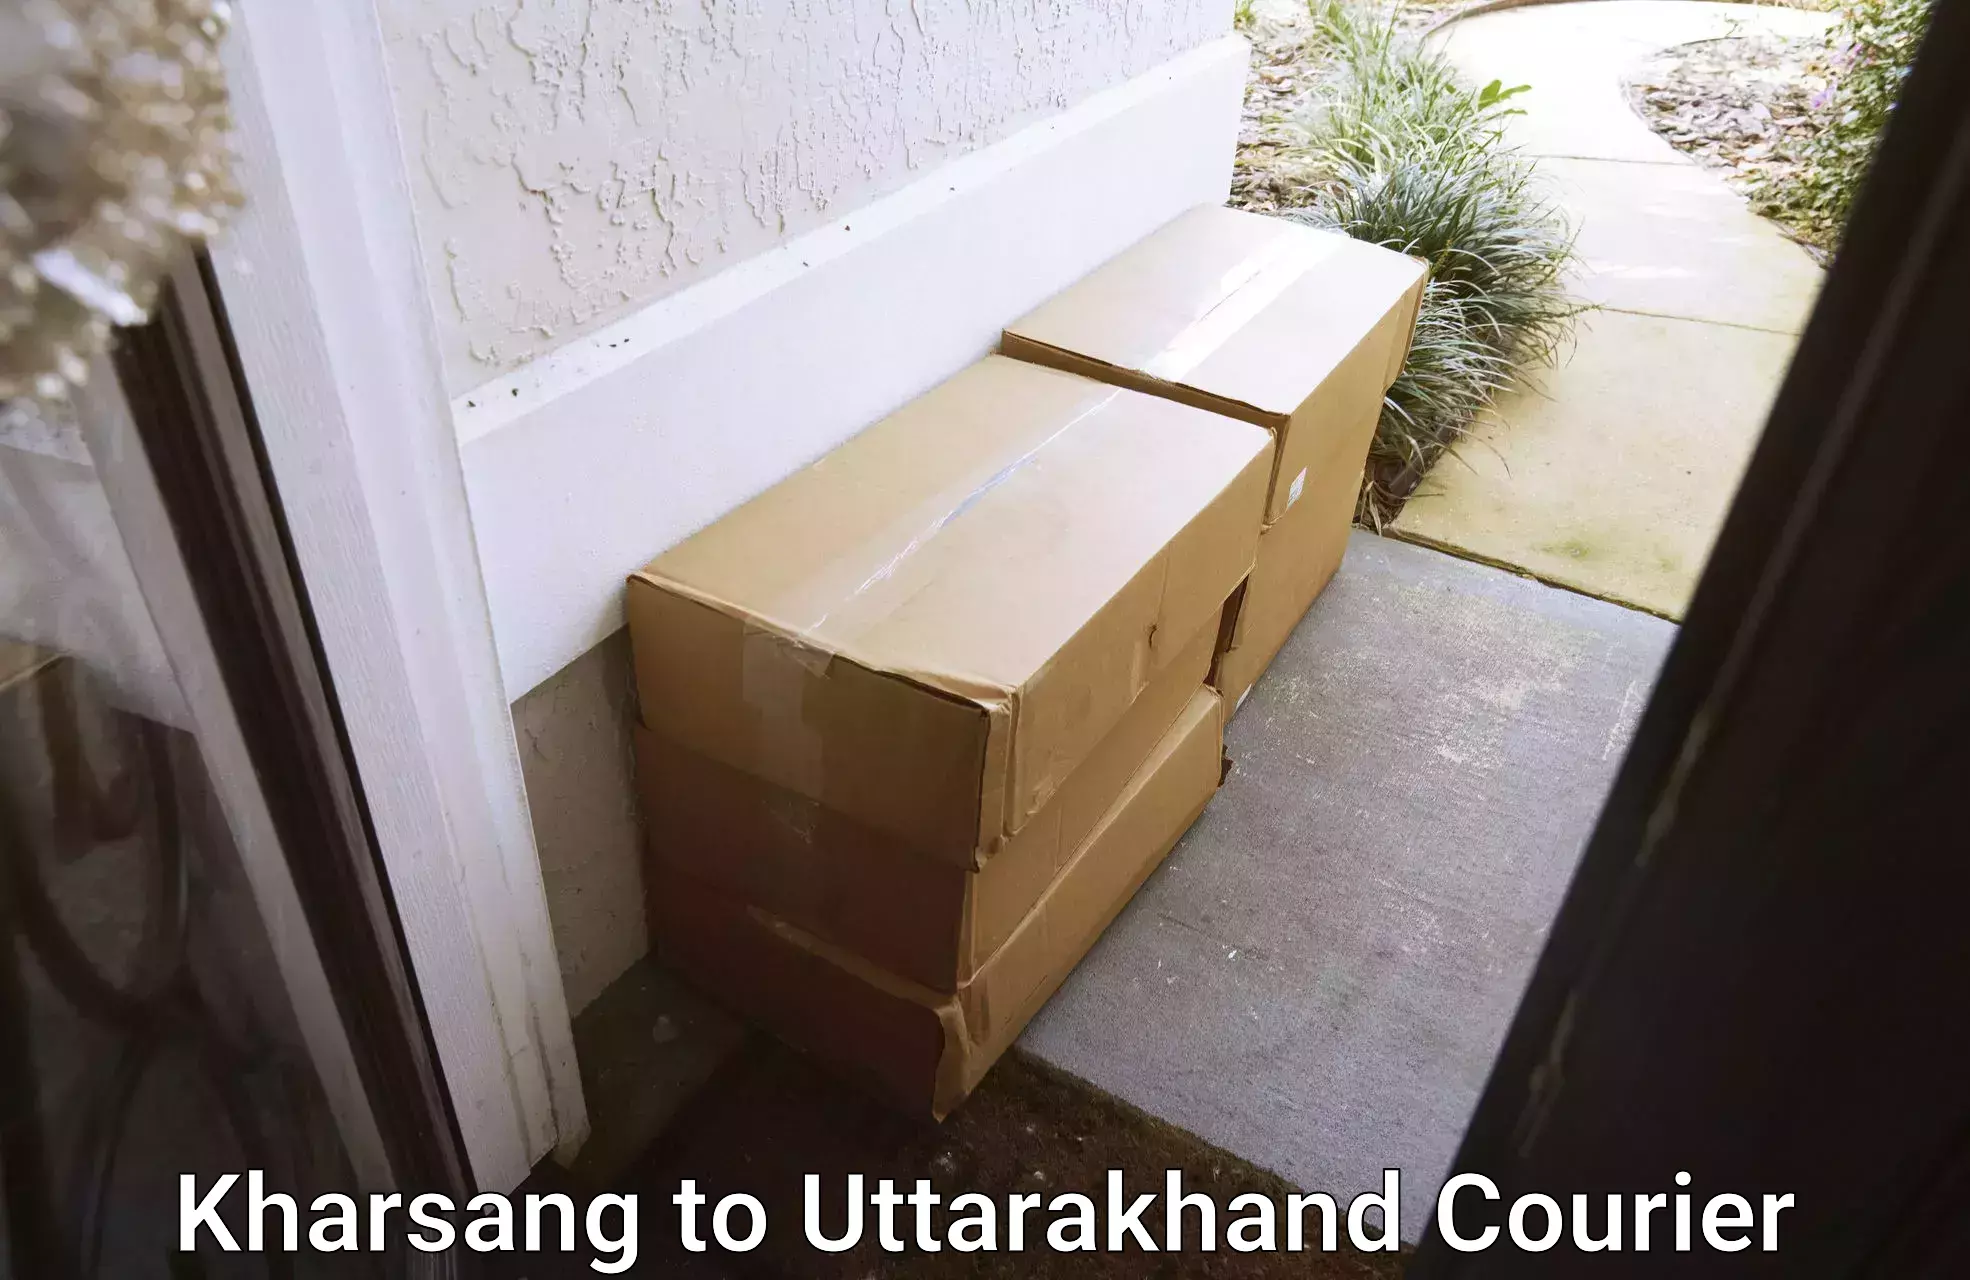 On-demand courier Kharsang to Uttarakhand